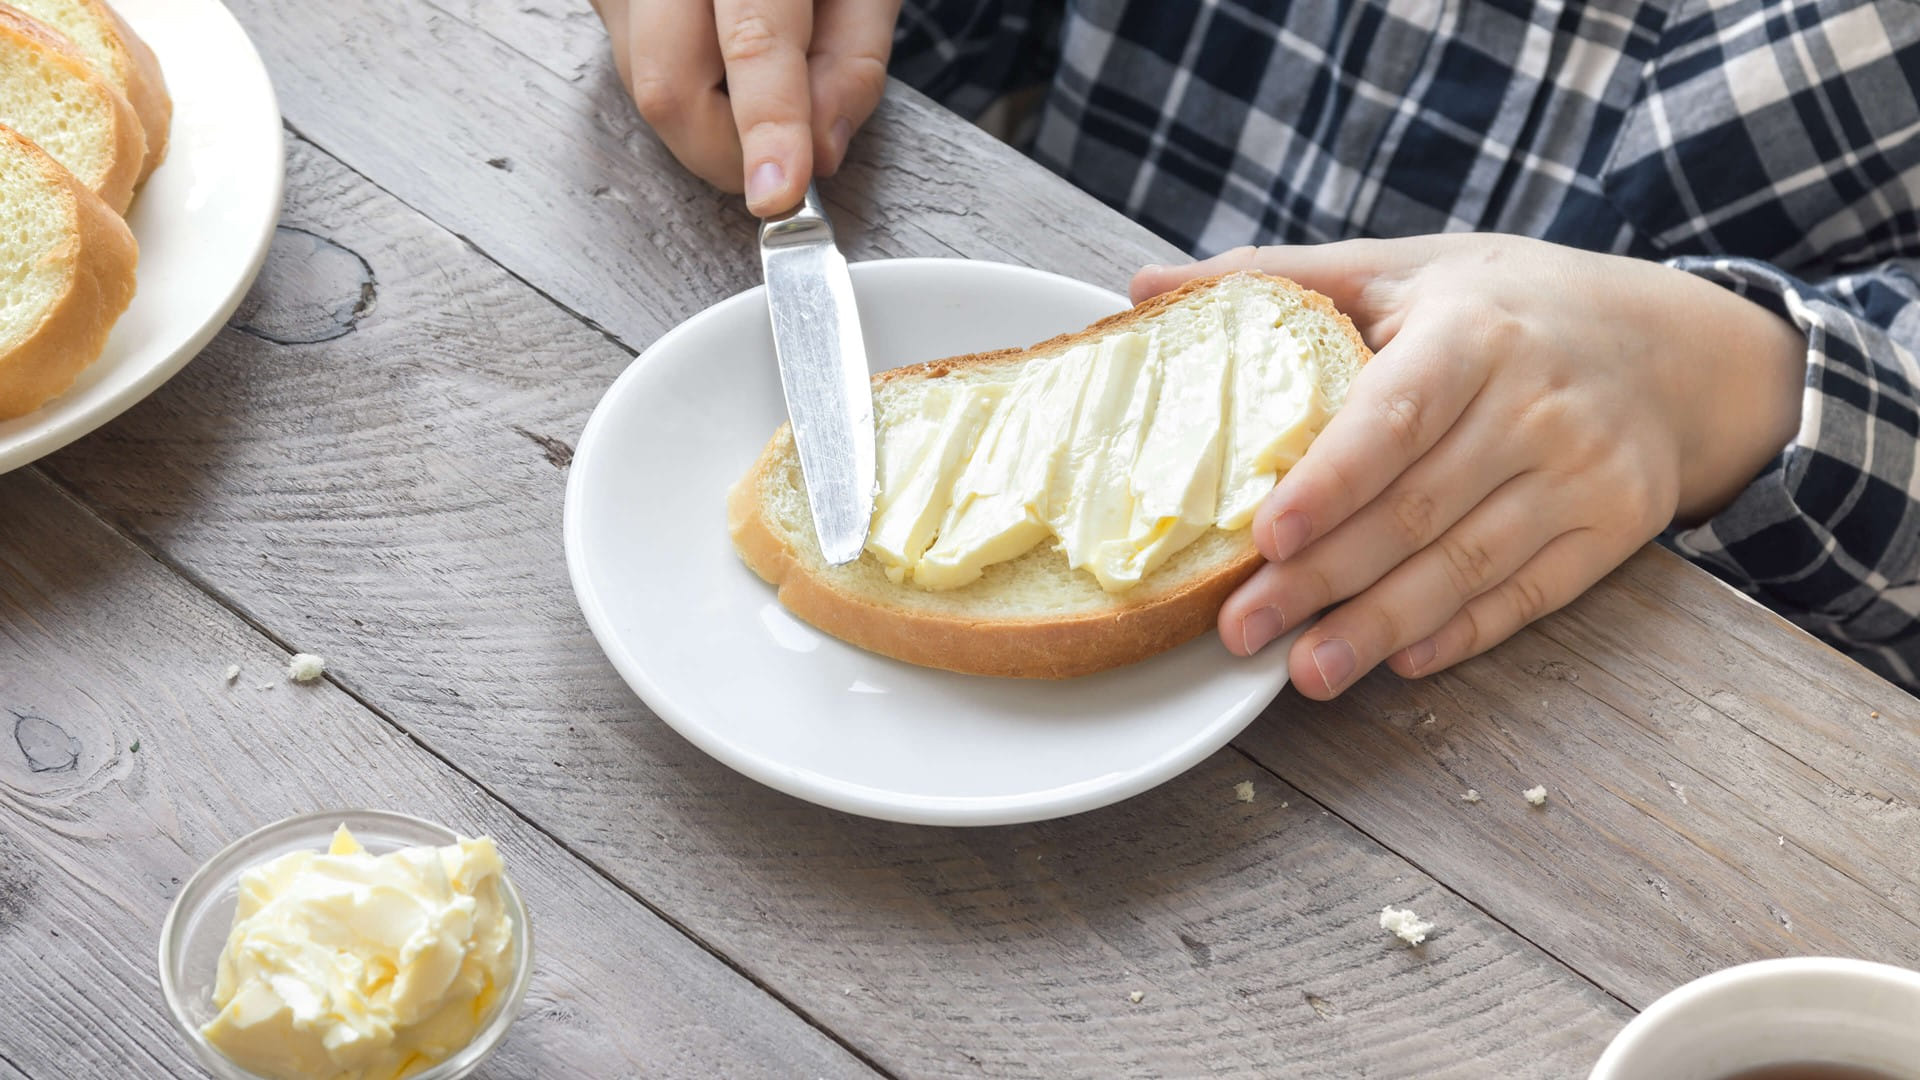 Natieranie masla na chleba.